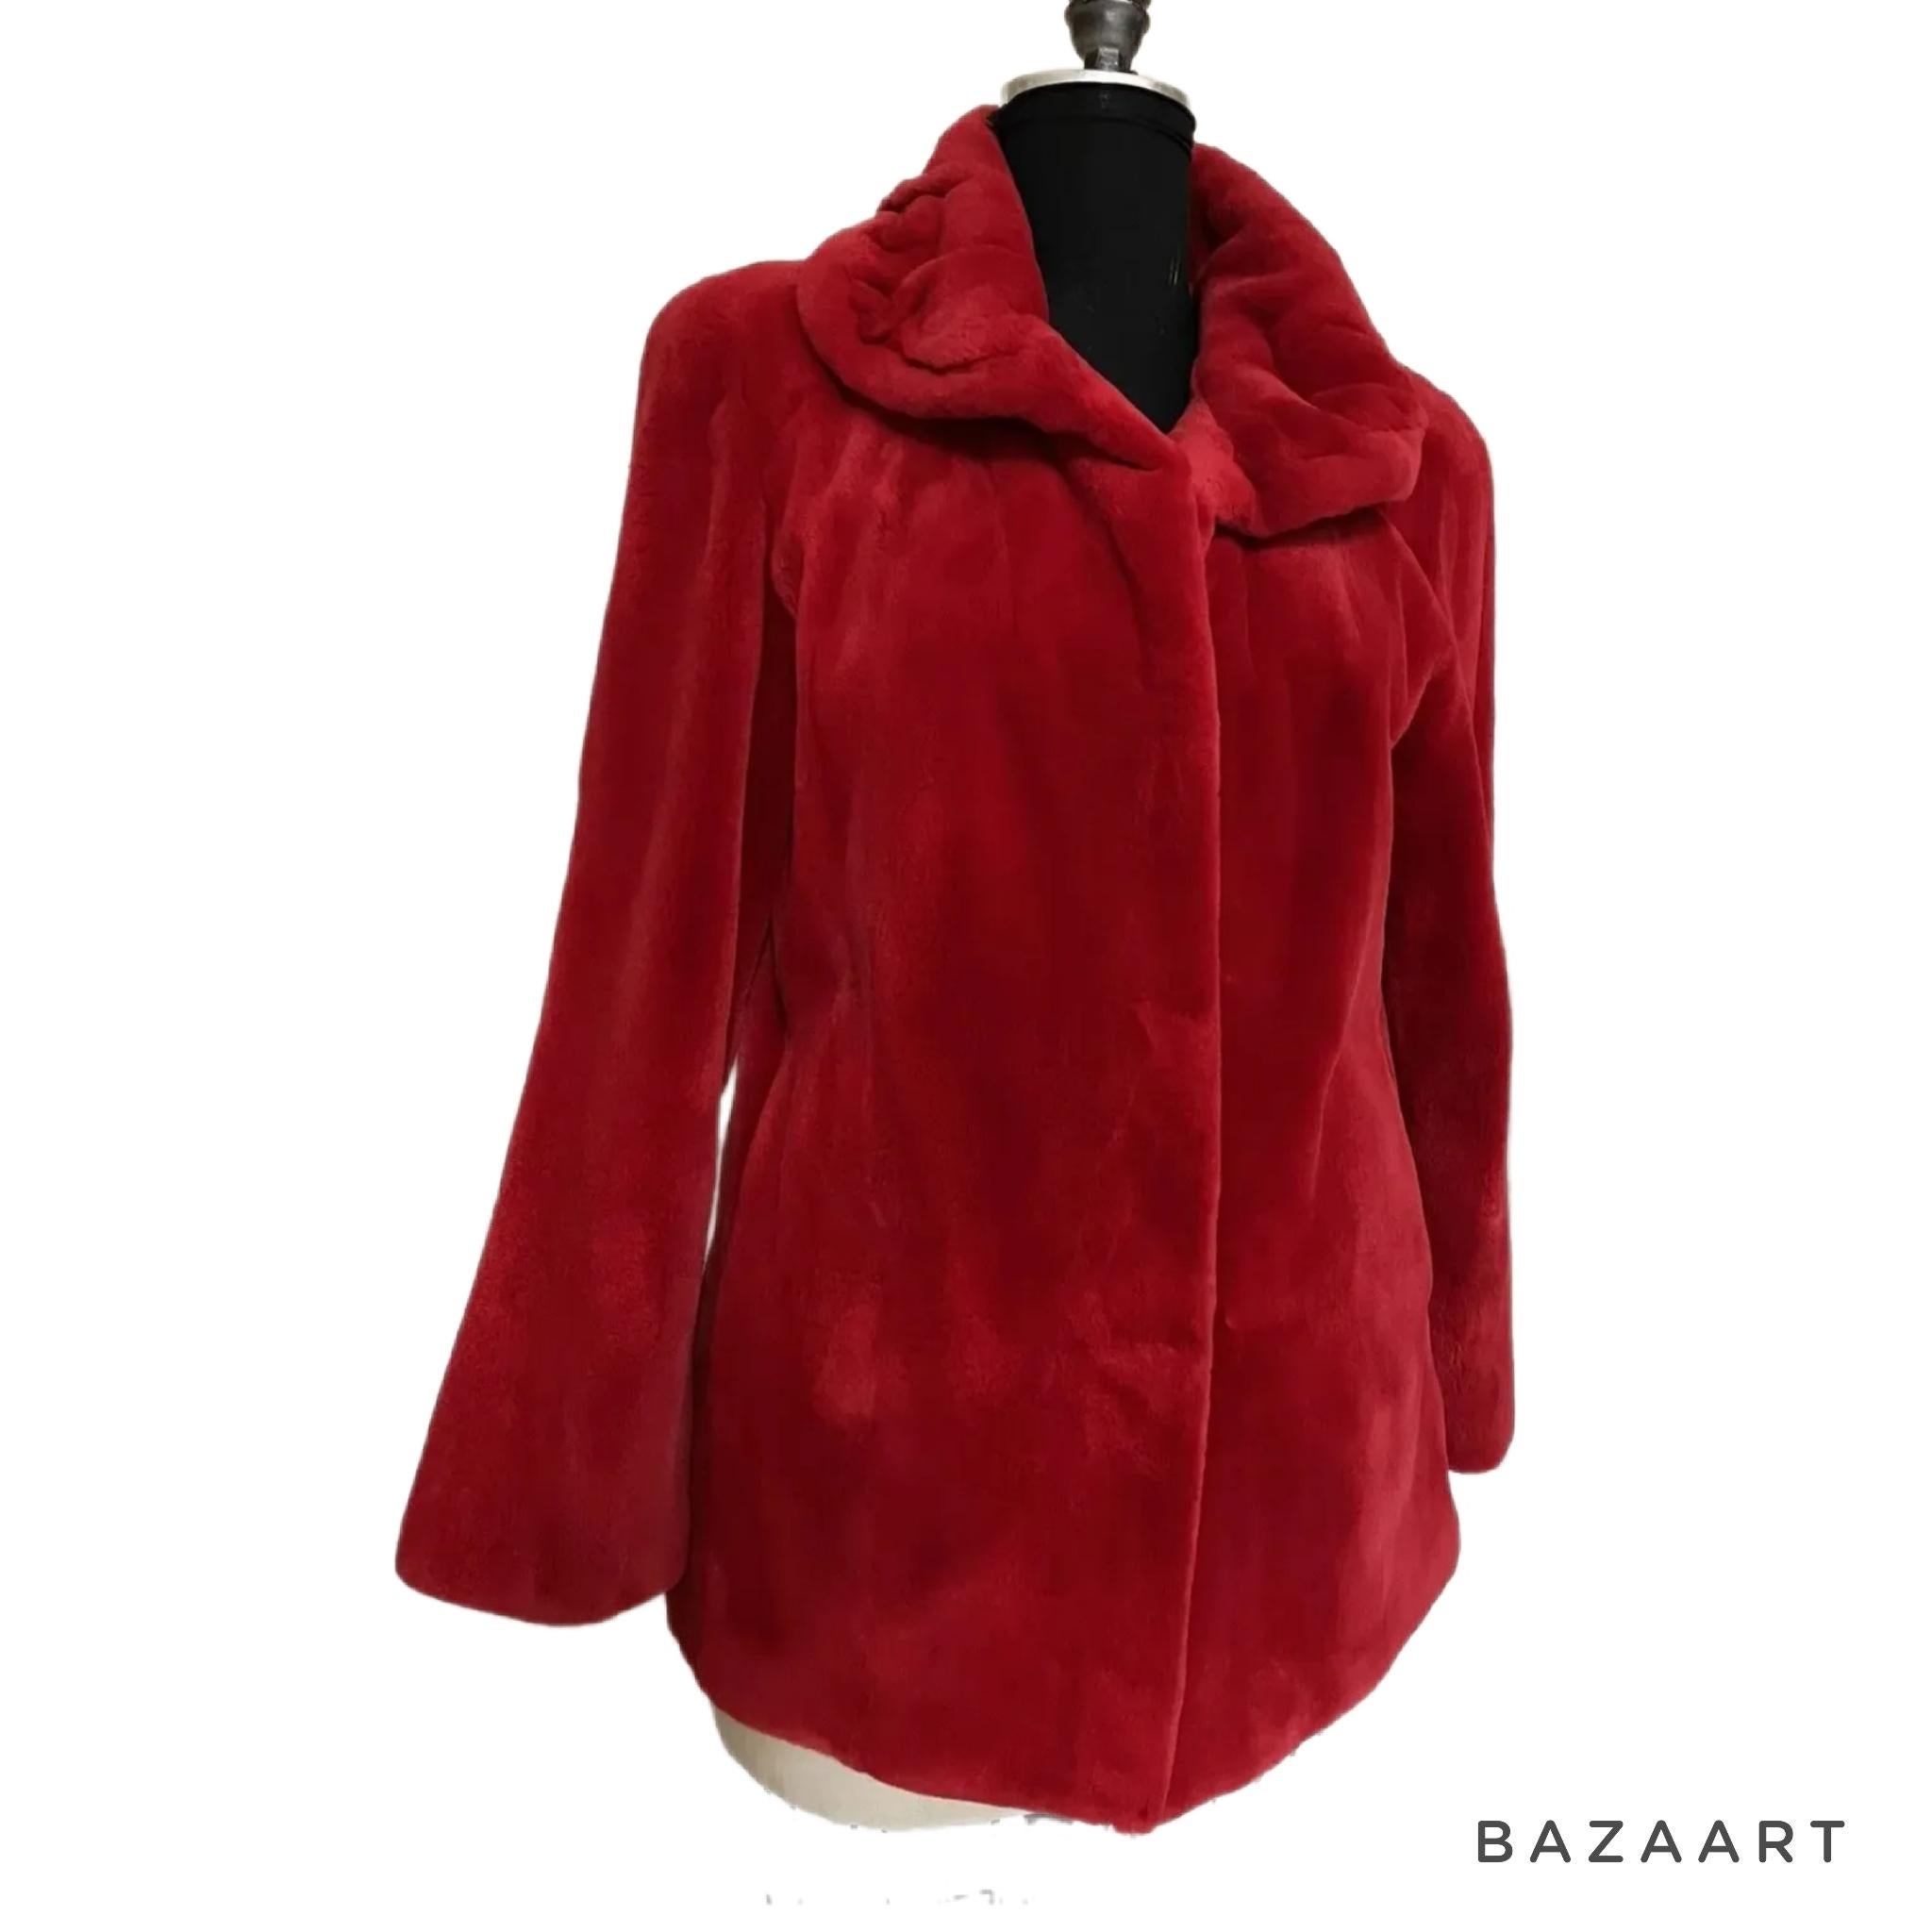 Brand new Birger Christensen manteau de fourrure de vison tondus rouge 12

Fabriqué par la ligne exclusive Birger Christensen

MESURES :
Taille 12 M-One
Longueur : 28